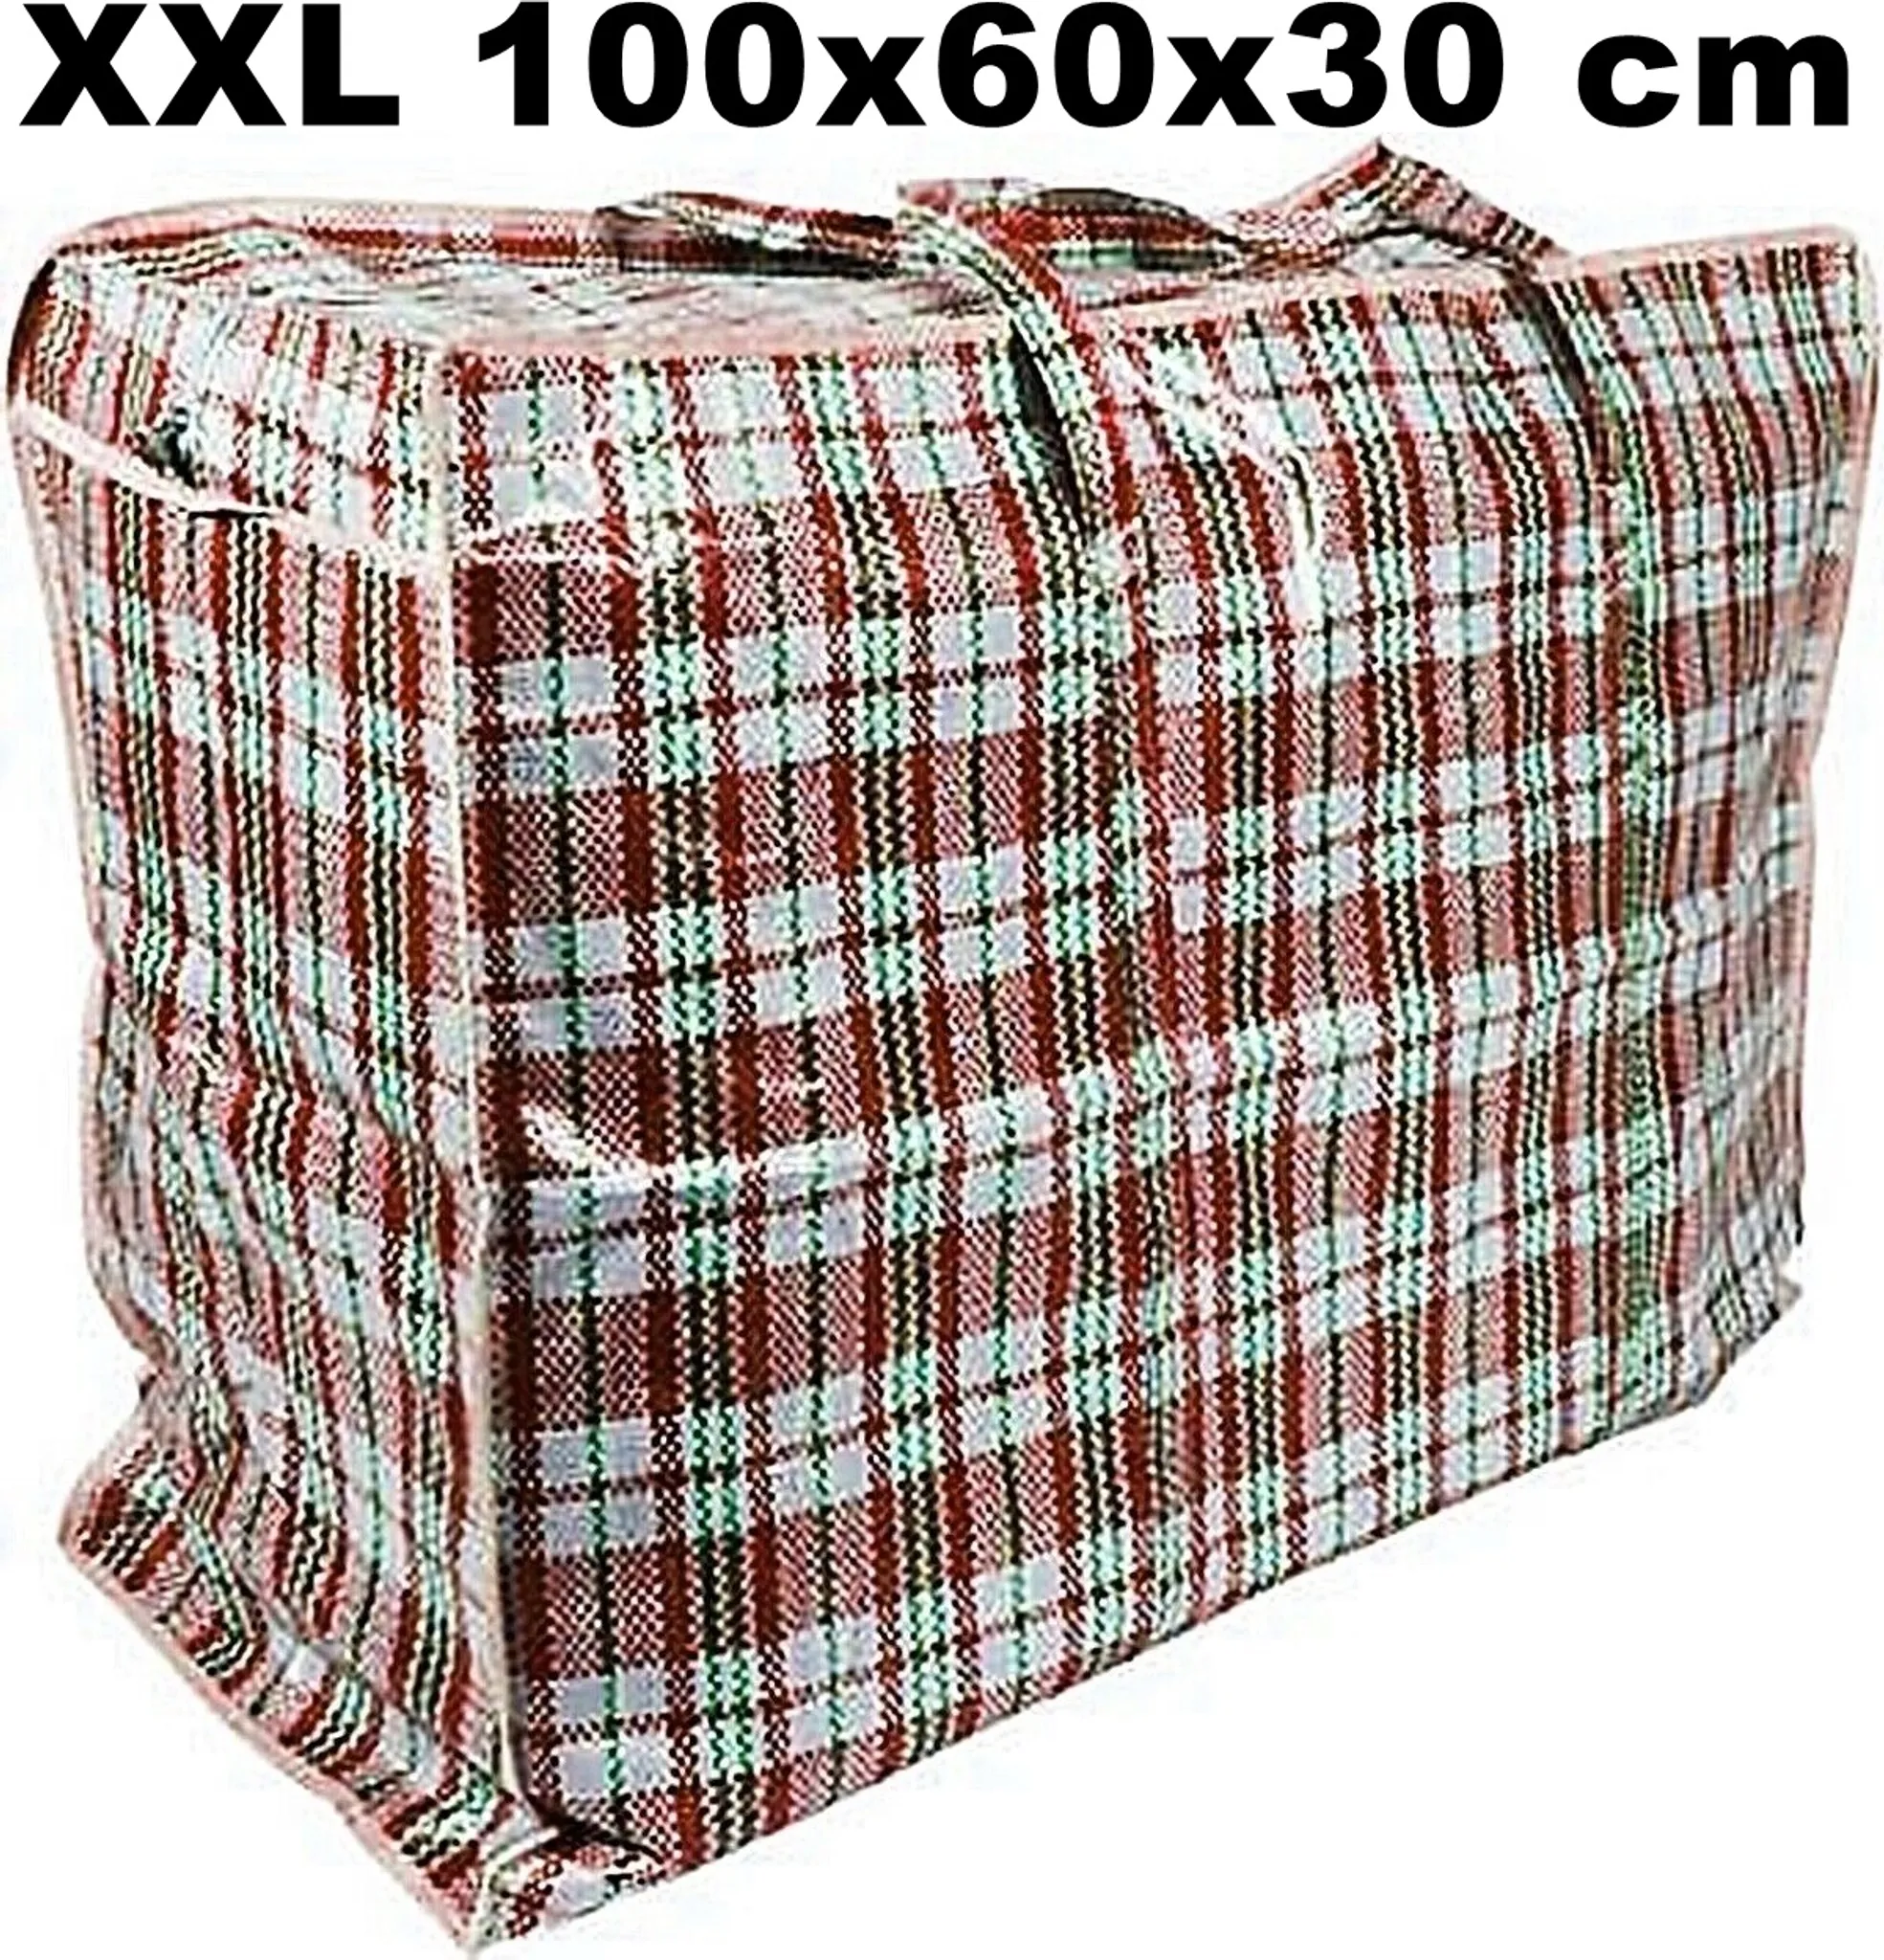 XXL Aufbewahrungstasche, Tasche Jumbo 225 Liter